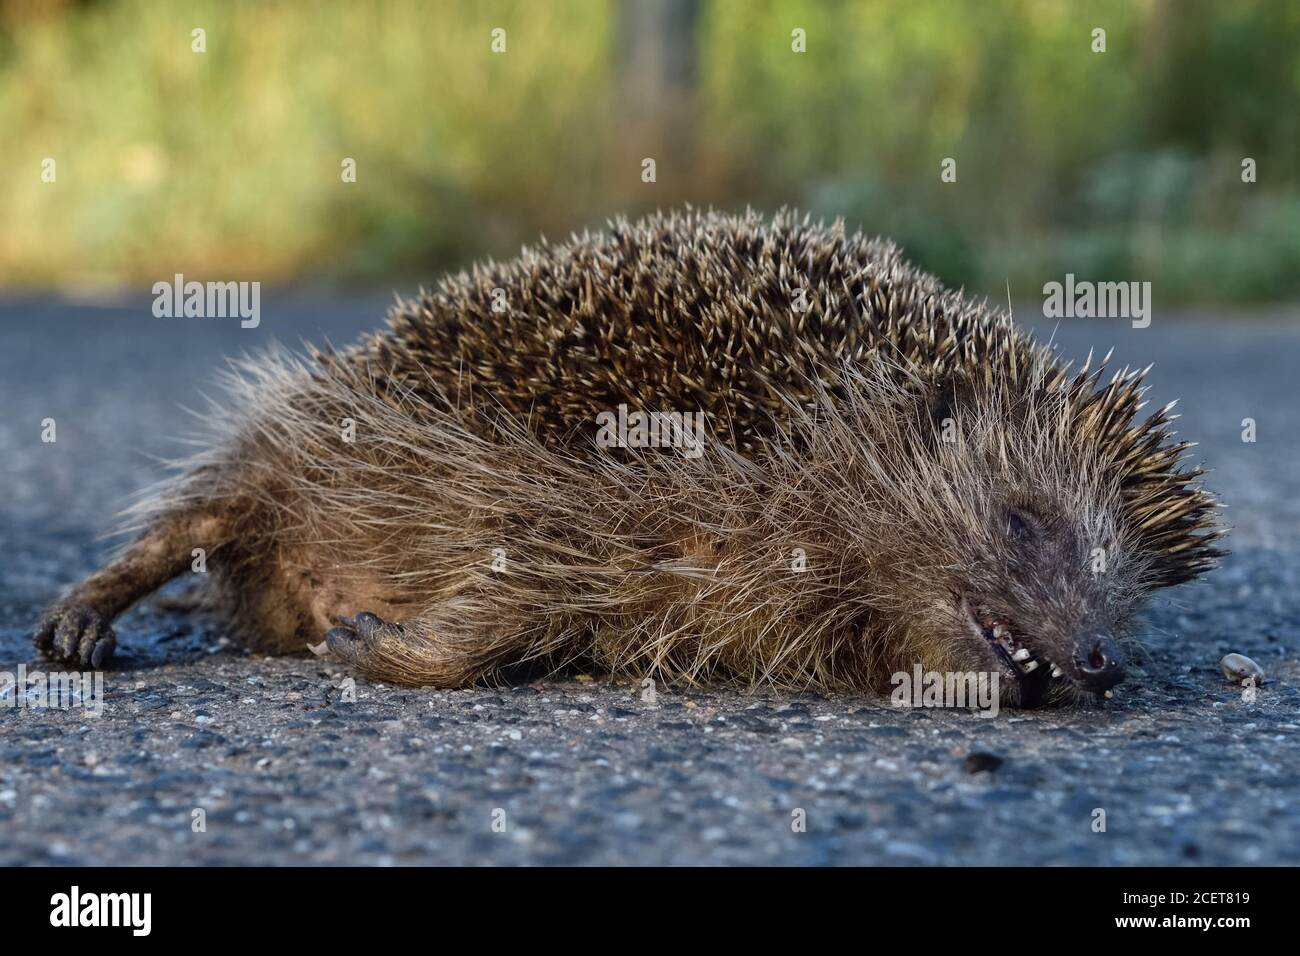 Hedgehog ( Erinaceus europaeus ), morto, schiacciato sulla strada, uccisione stradale, in pericolo, percorso dal traffico stradale, vittima del traffico, fauna selvatica, Europa. Foto Stock